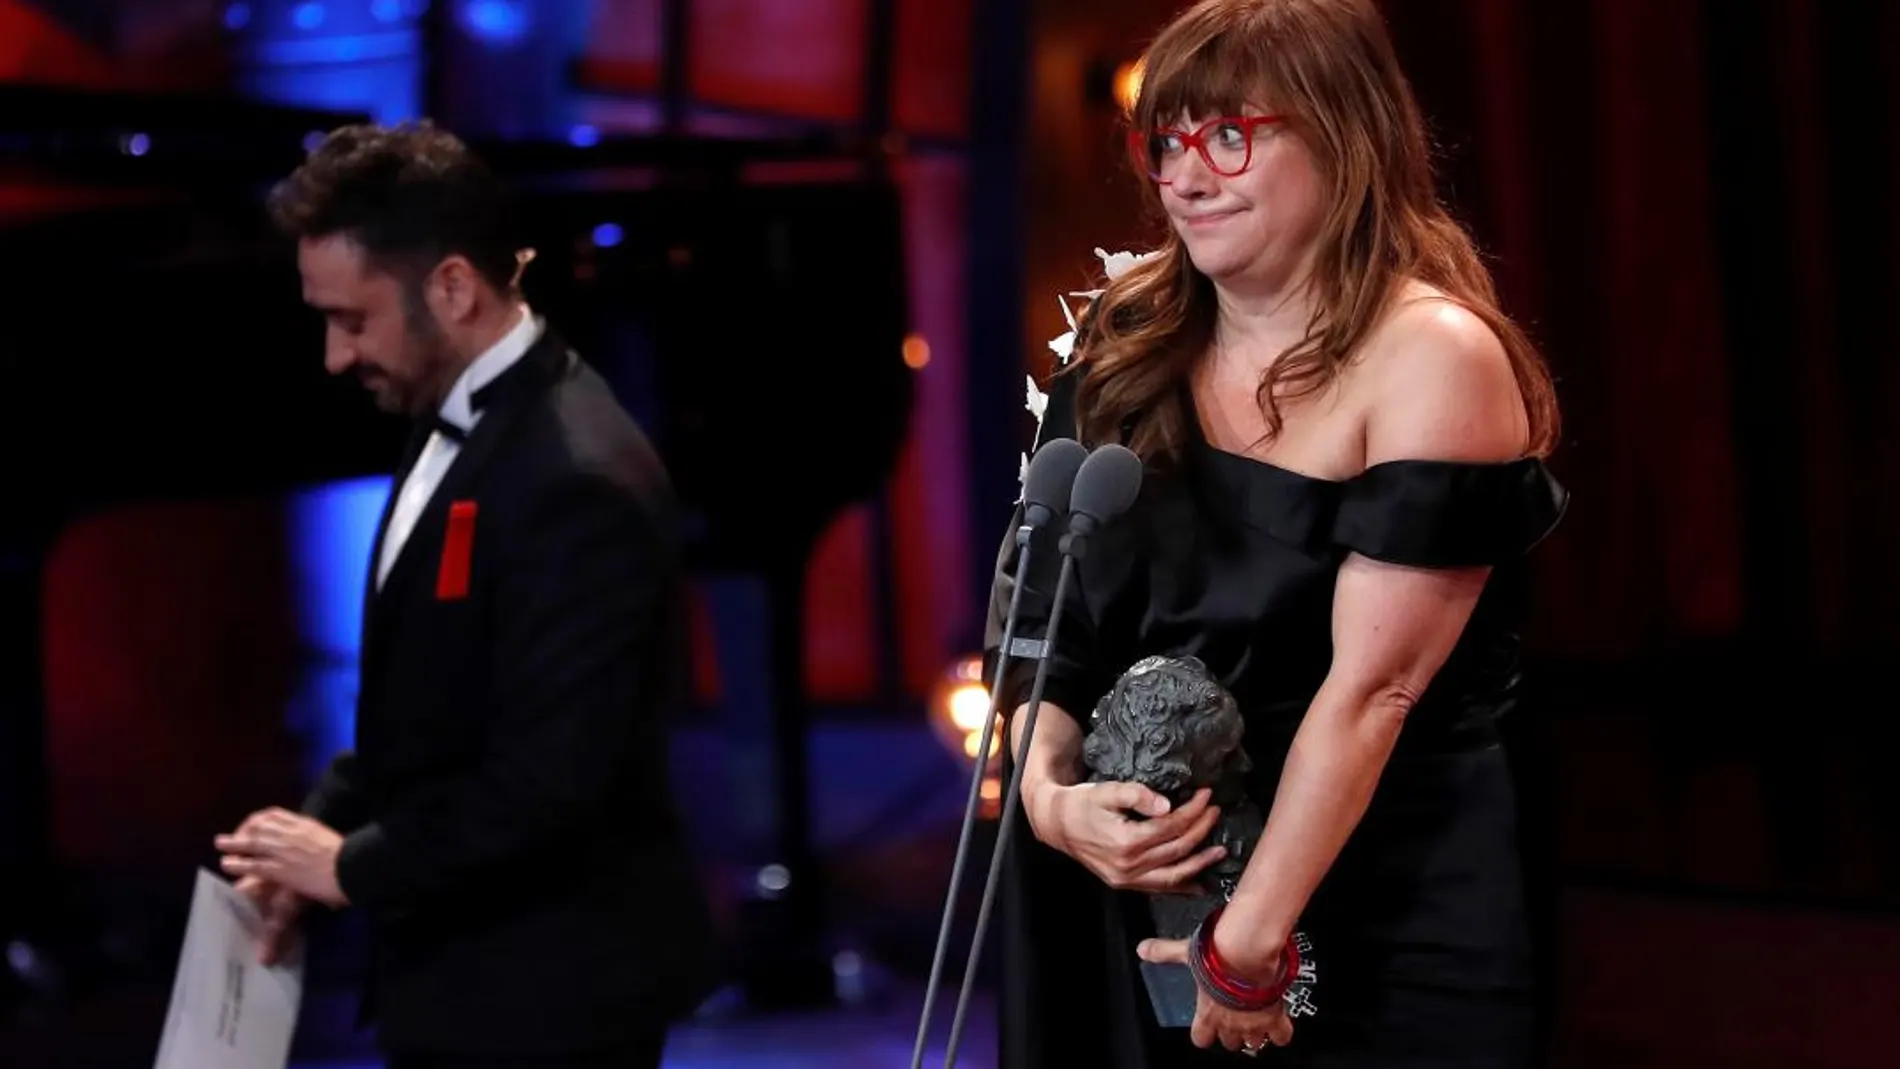 La realizadora Isabel Coixet tras recibir el premio a la "Mejor dirección"por su trabajo "La librería"